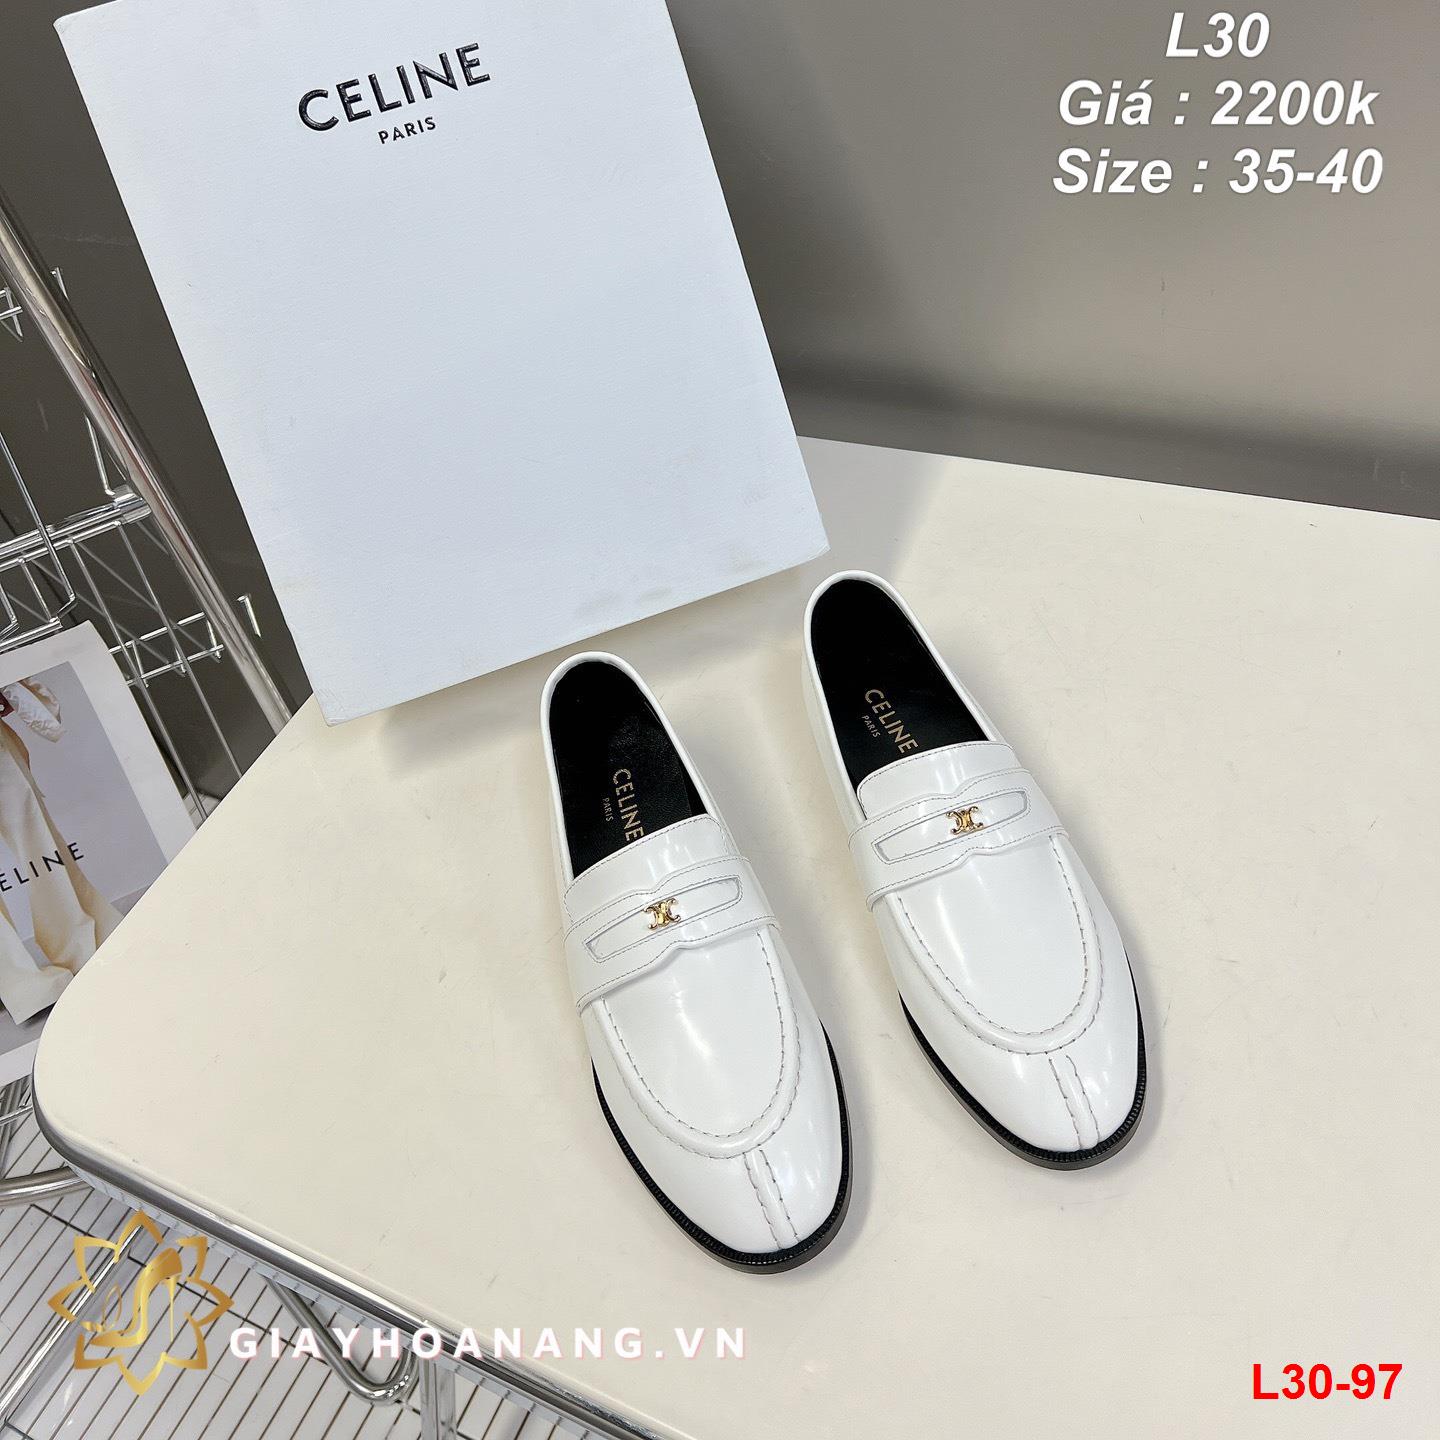 L30-97 Celine giày lười siêu cấp